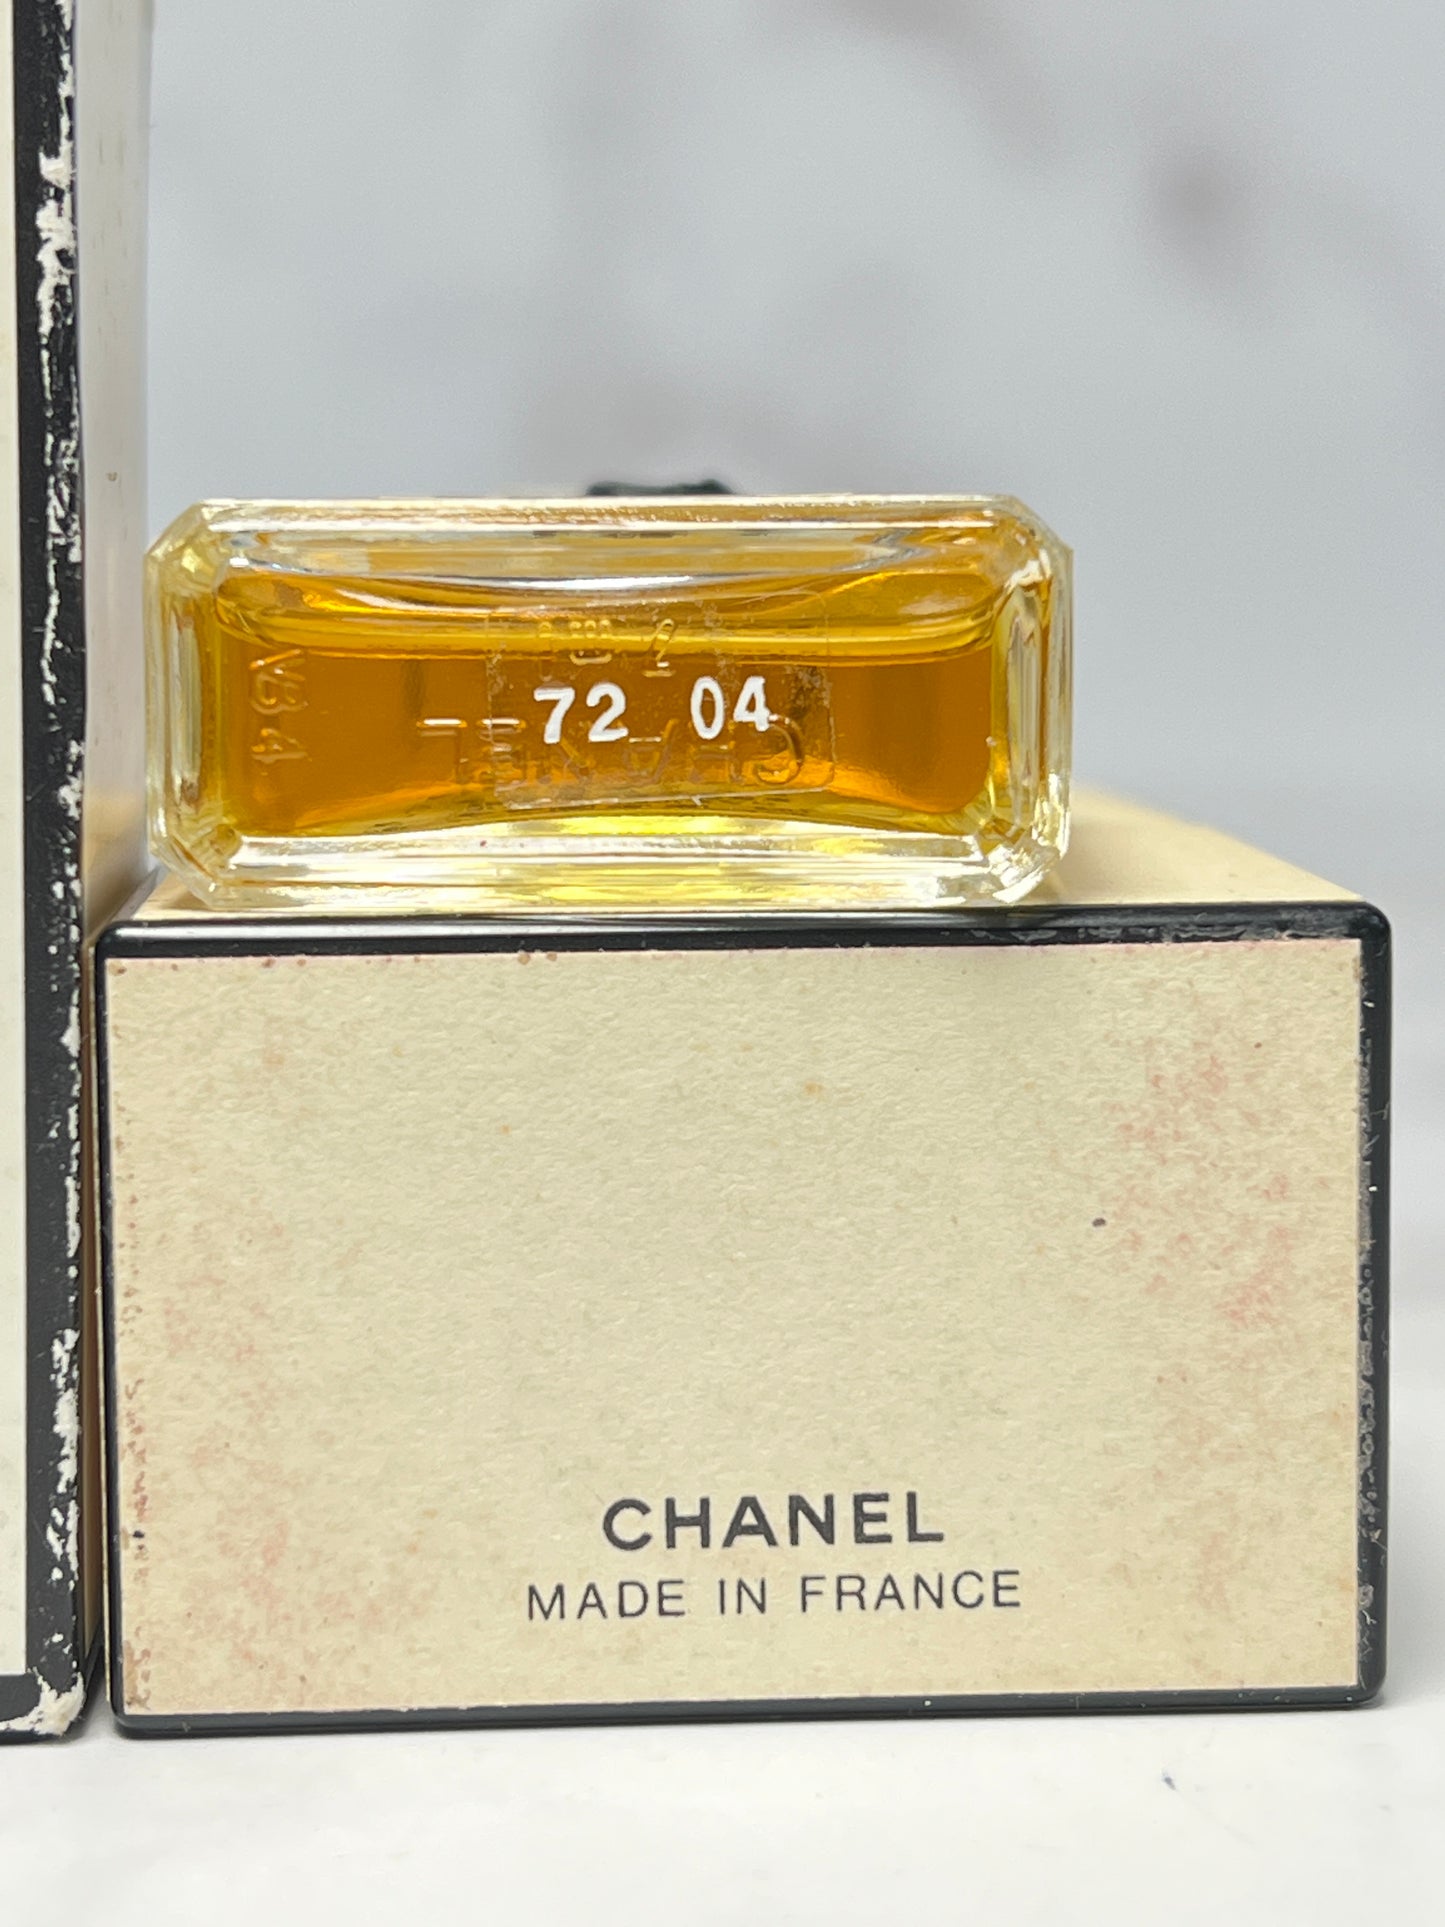 Rare Chanel  no.19 7ml 1/4 oz parfum Perfume  - 180723-26